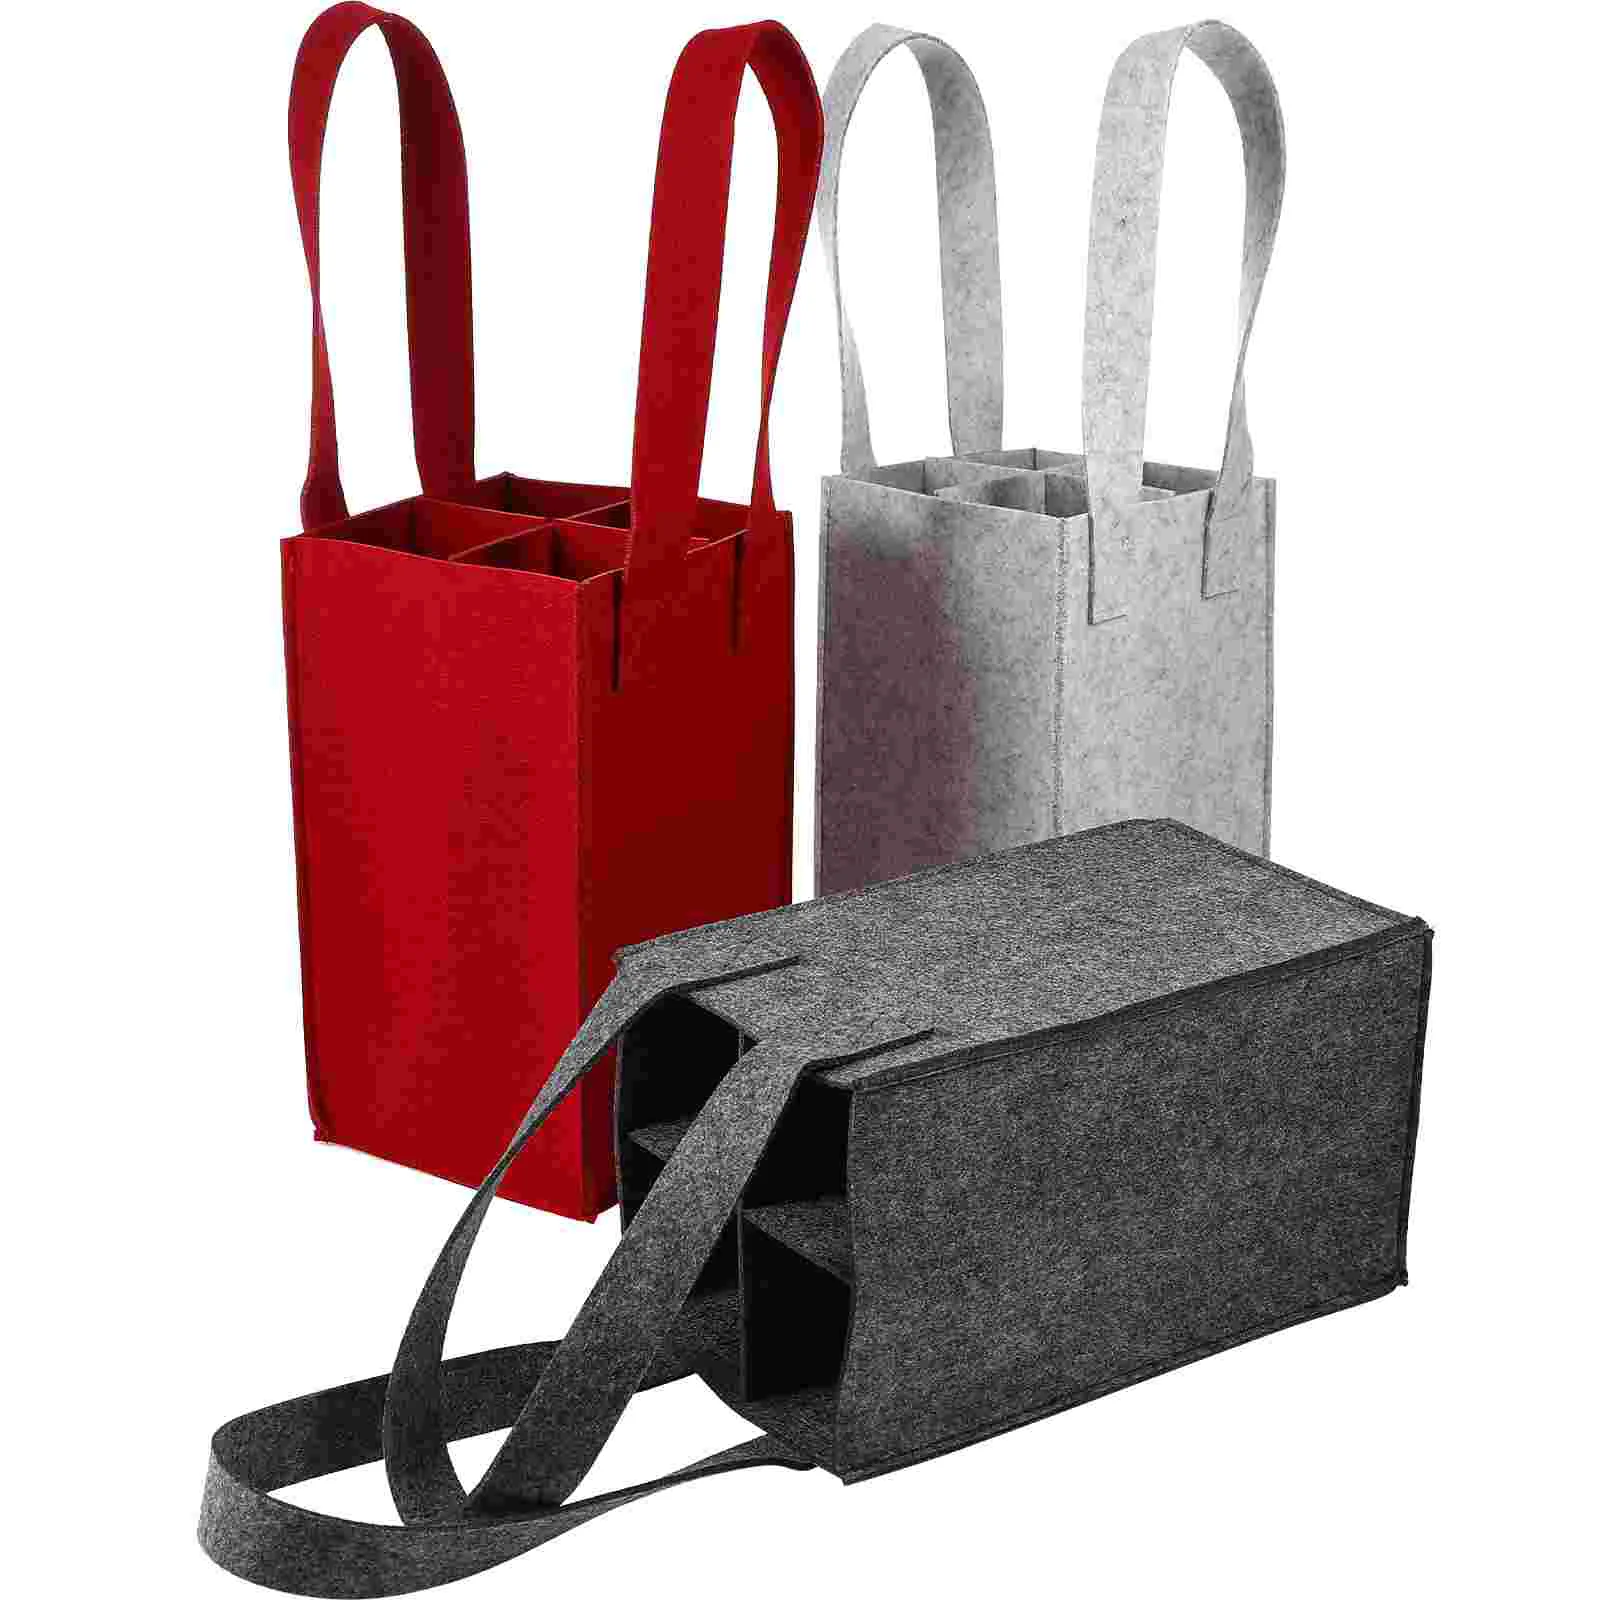 

Bag Bottle Carrier Picnics Carriers Bags Felt Grocery Large Capacity Divider Bottles Red Suitcase Beer cooler